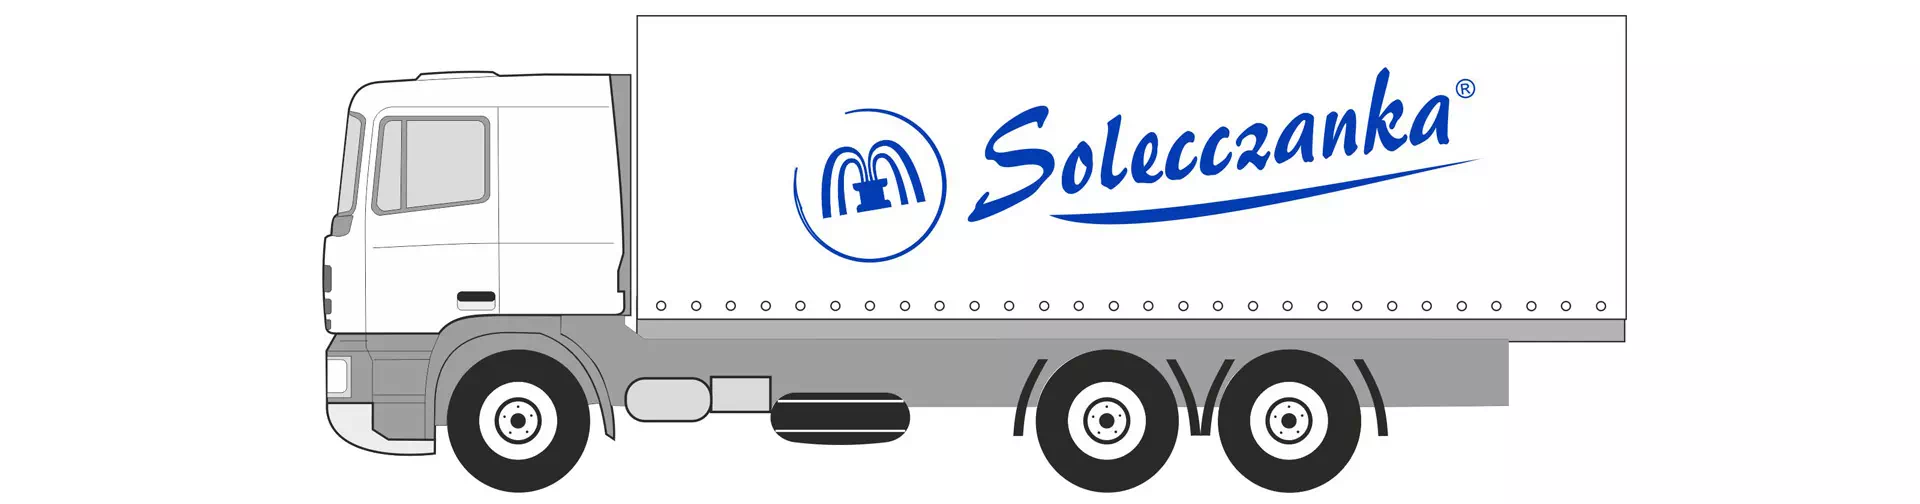 Ciężarówka z logiem Solecczanka